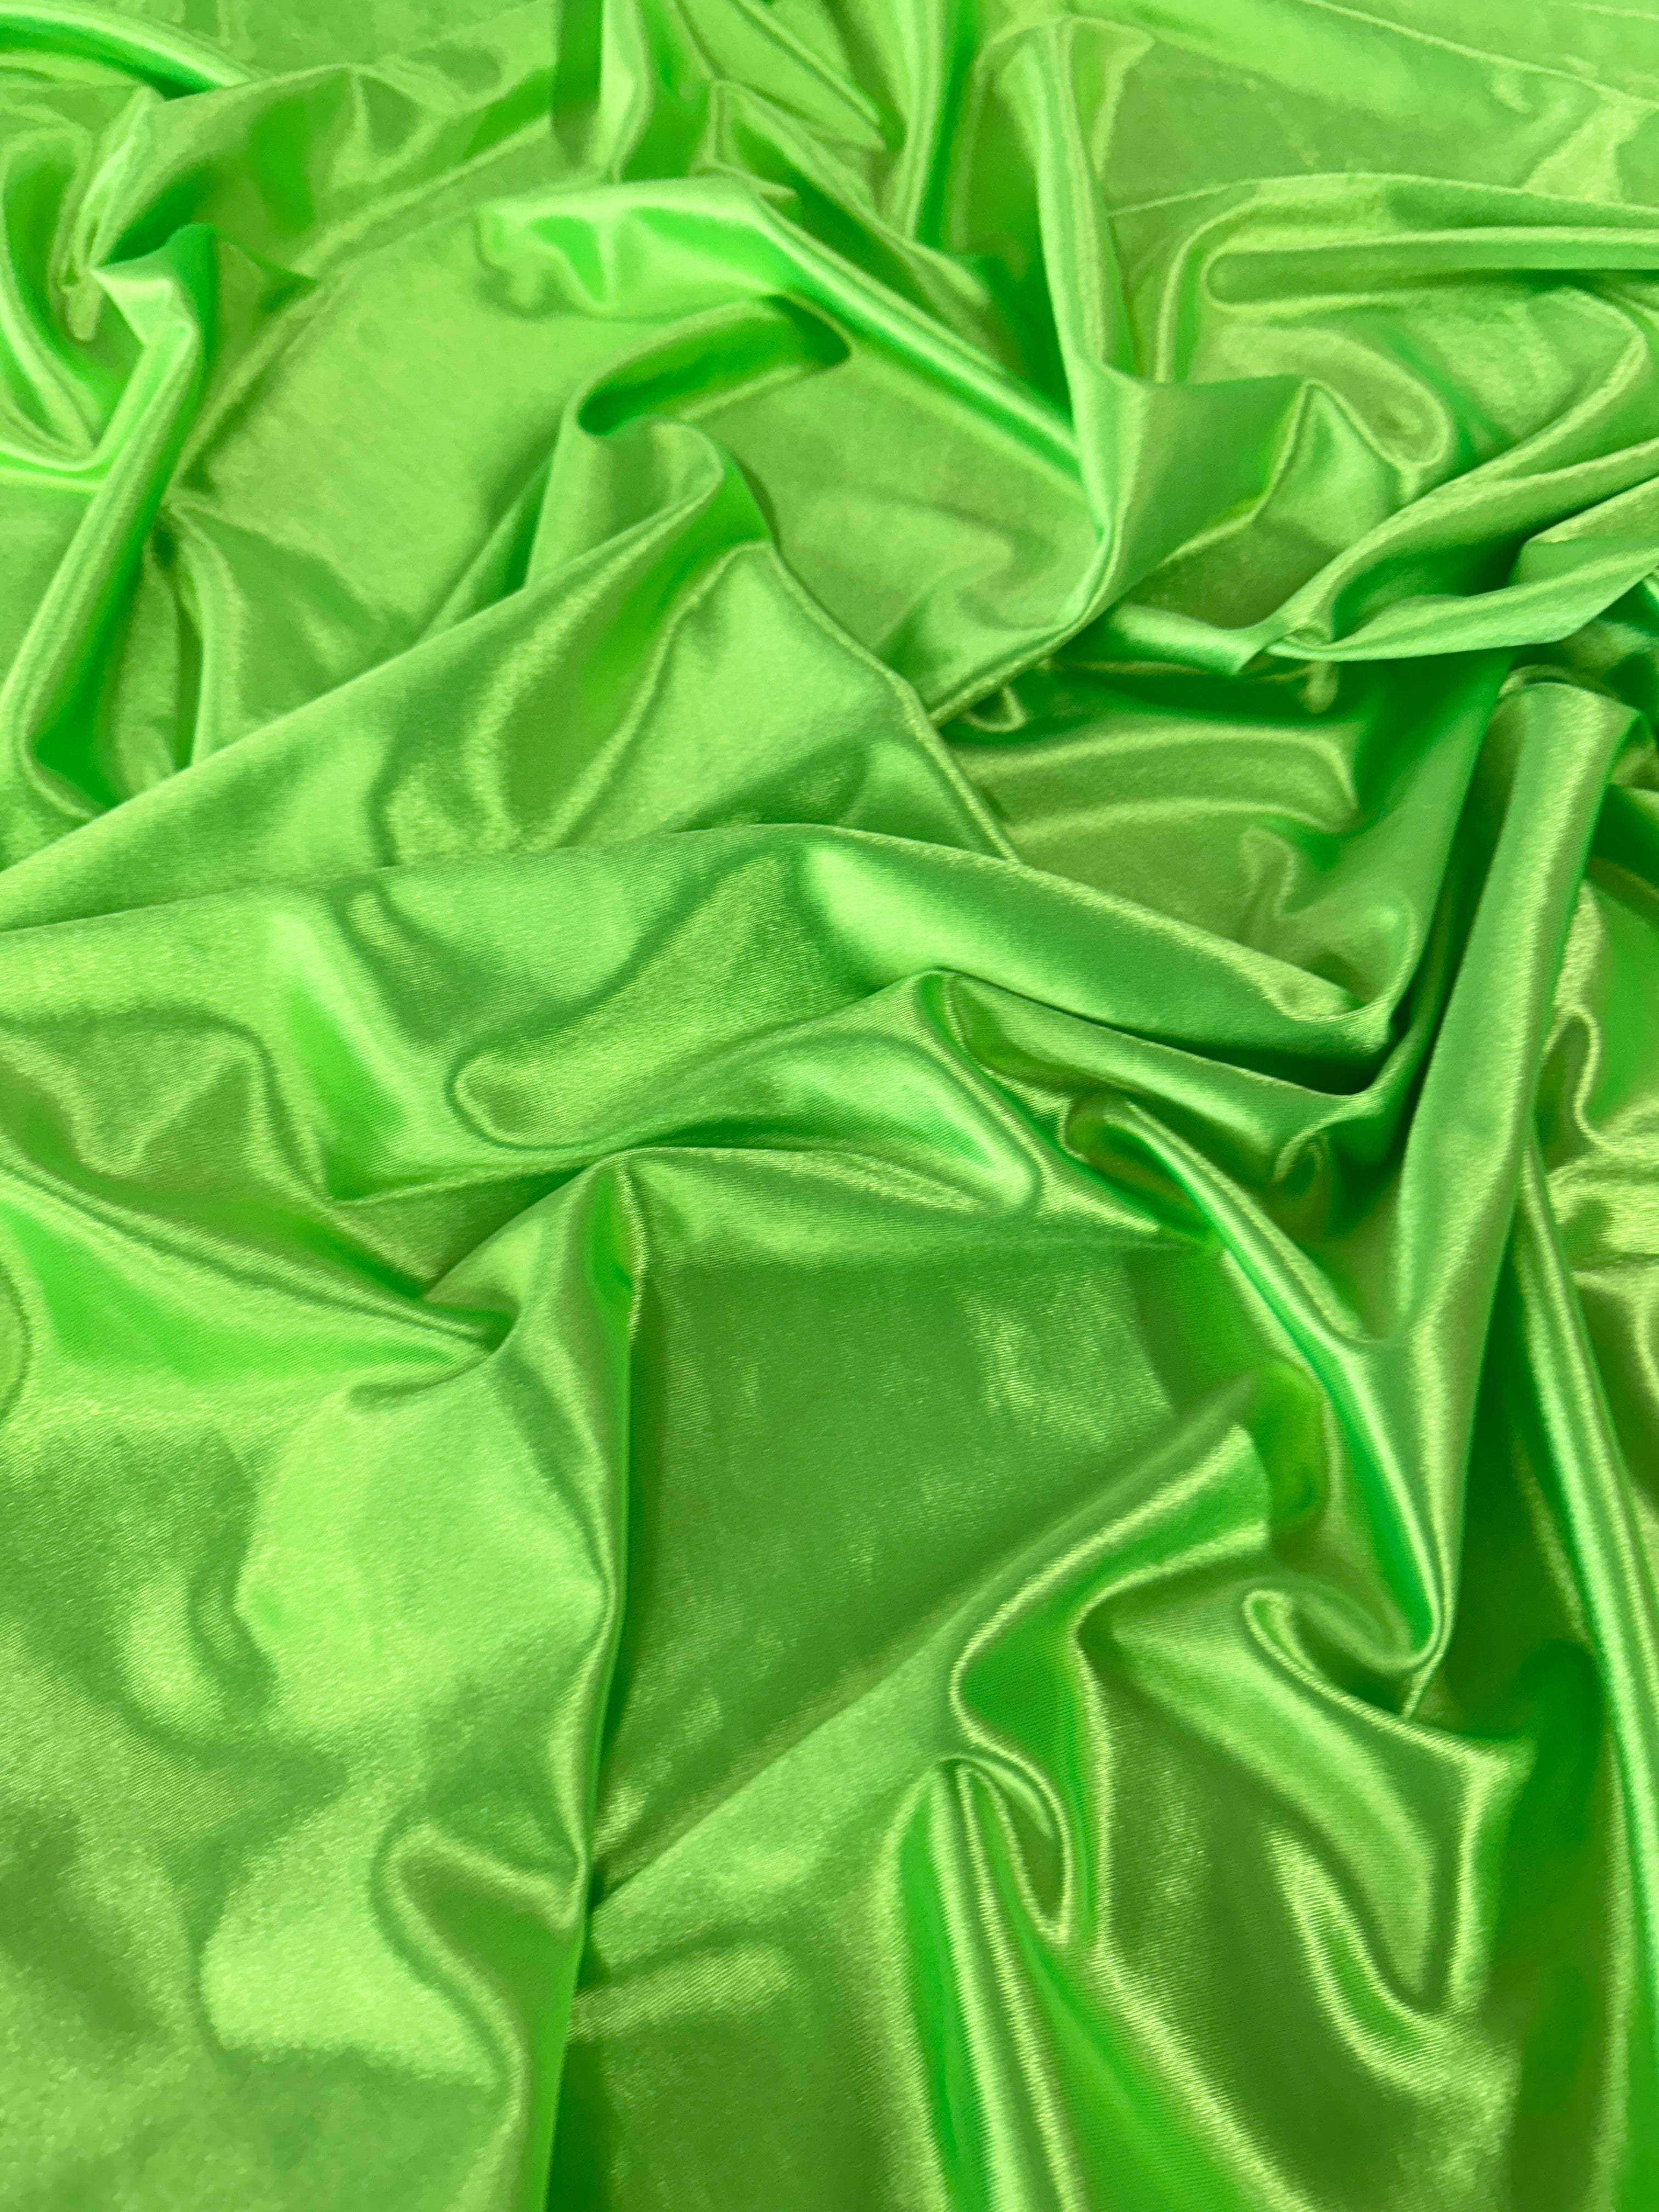 Neon Green Shiny Nylon Spandex, Green Spandex, Nylon Spandex, Shiny Spandex,Stretch Fabric, 4 way stretch fabric, Fabric on Sale, Activewear Fabric, Polyester Fabric, Leggings yoga spandex